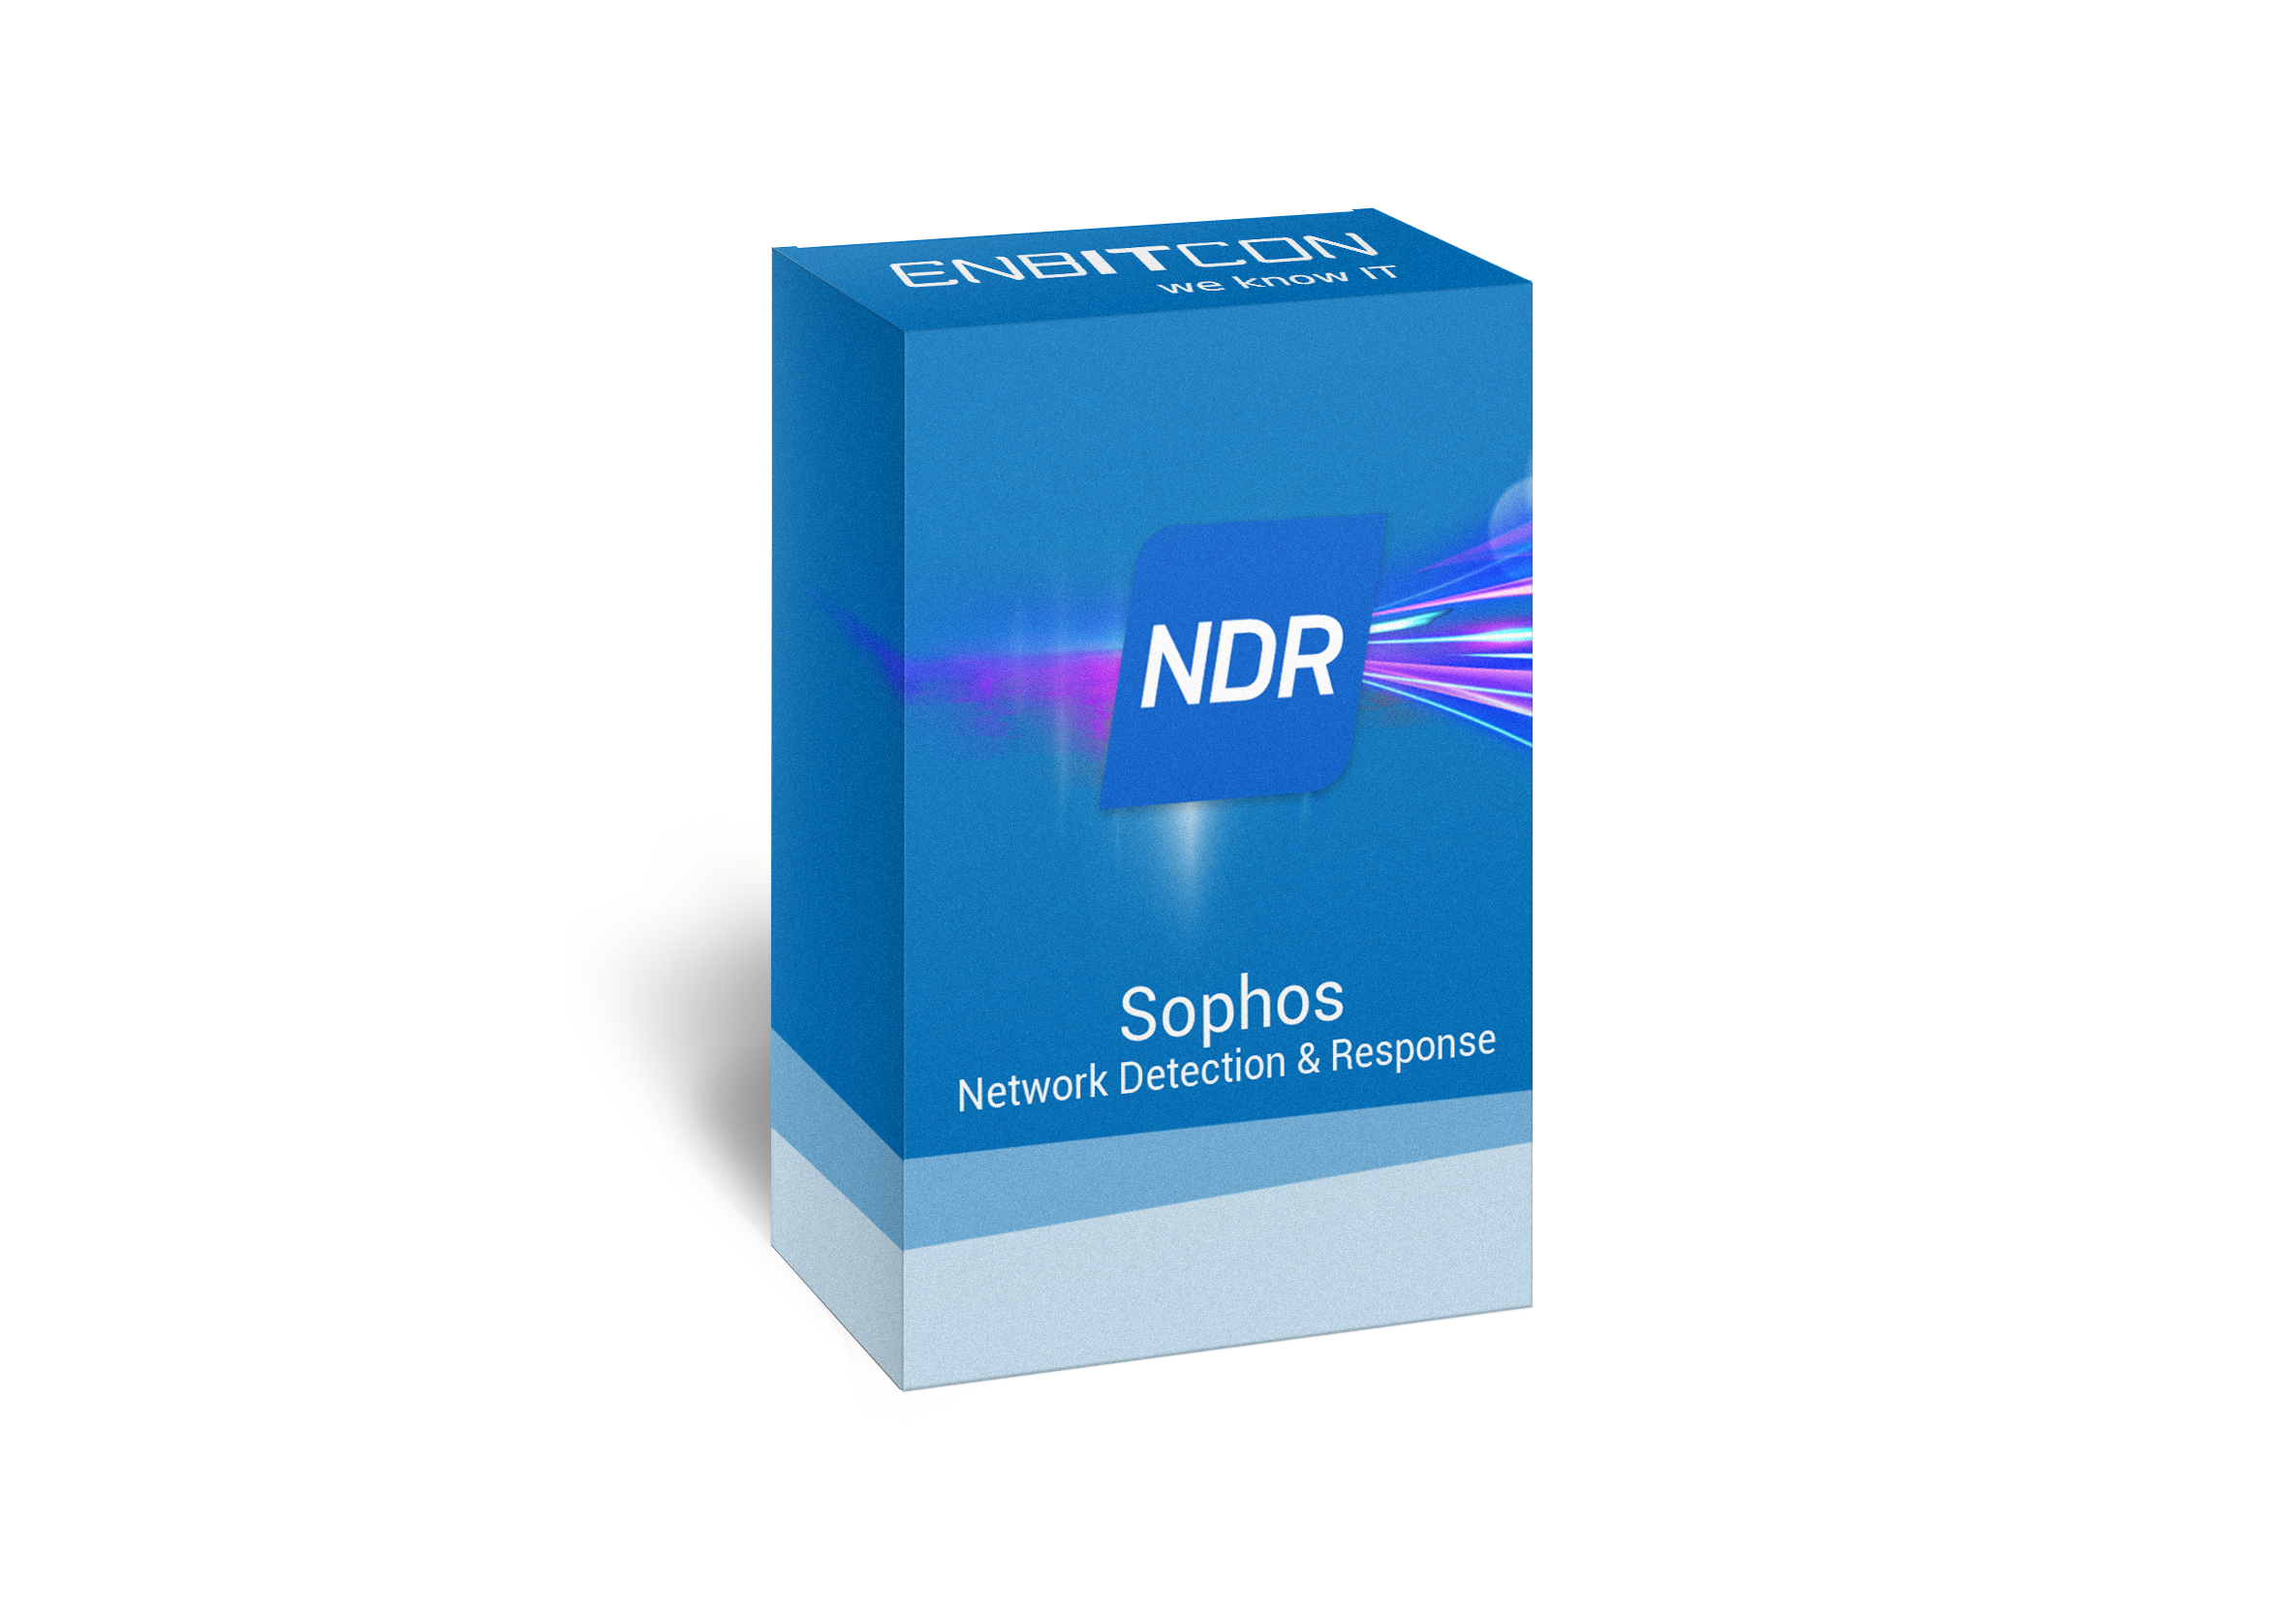 Sophos Network Detection & Response Box Vorschaubild bestehend aus einem NDR Kasten auf einer blauen Box